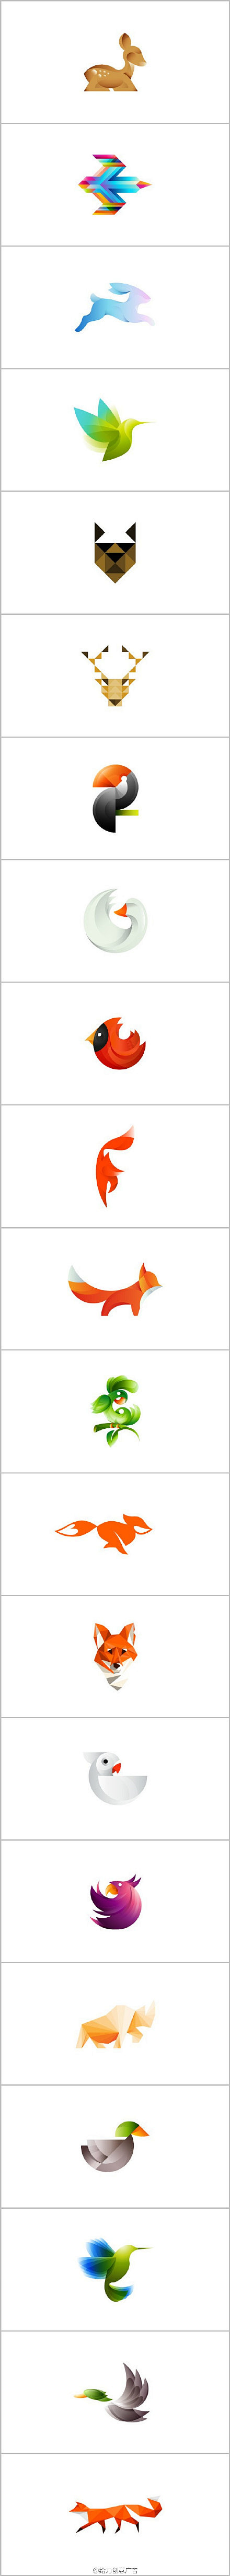 多边形渐变动物图形logo设计集锦